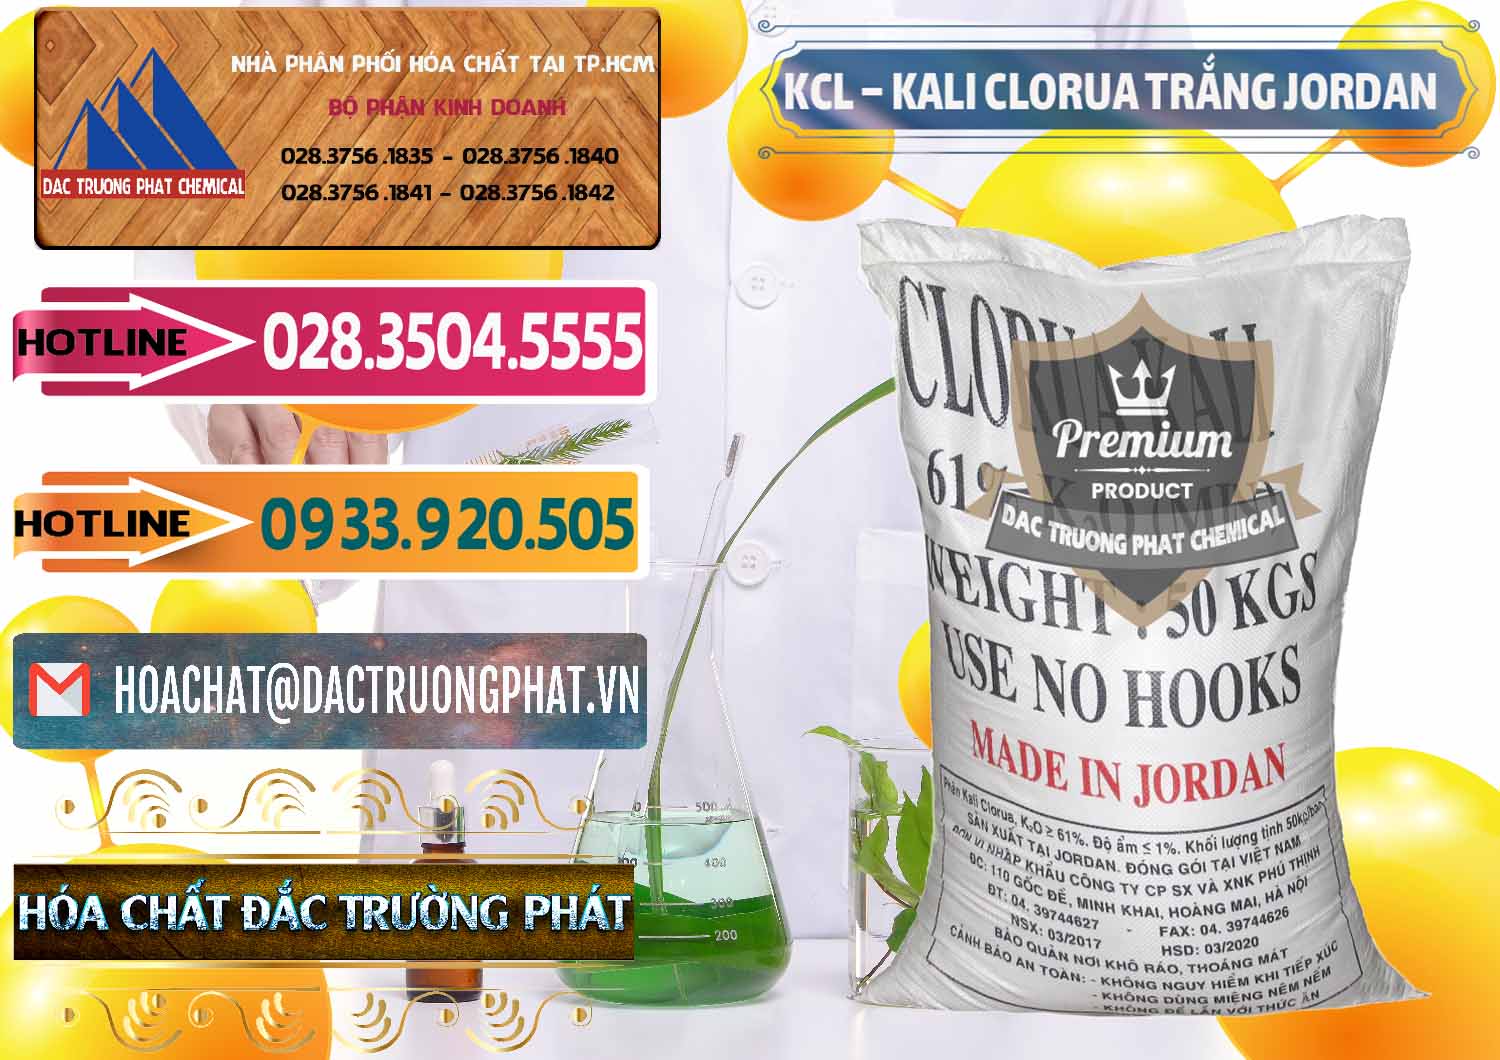 Nơi chuyên bán và phân phối KCL – Kali Clorua Trắng Jordan - 0088 - Công ty phân phối - nhập khẩu hóa chất tại TP.HCM - dactruongphat.vn